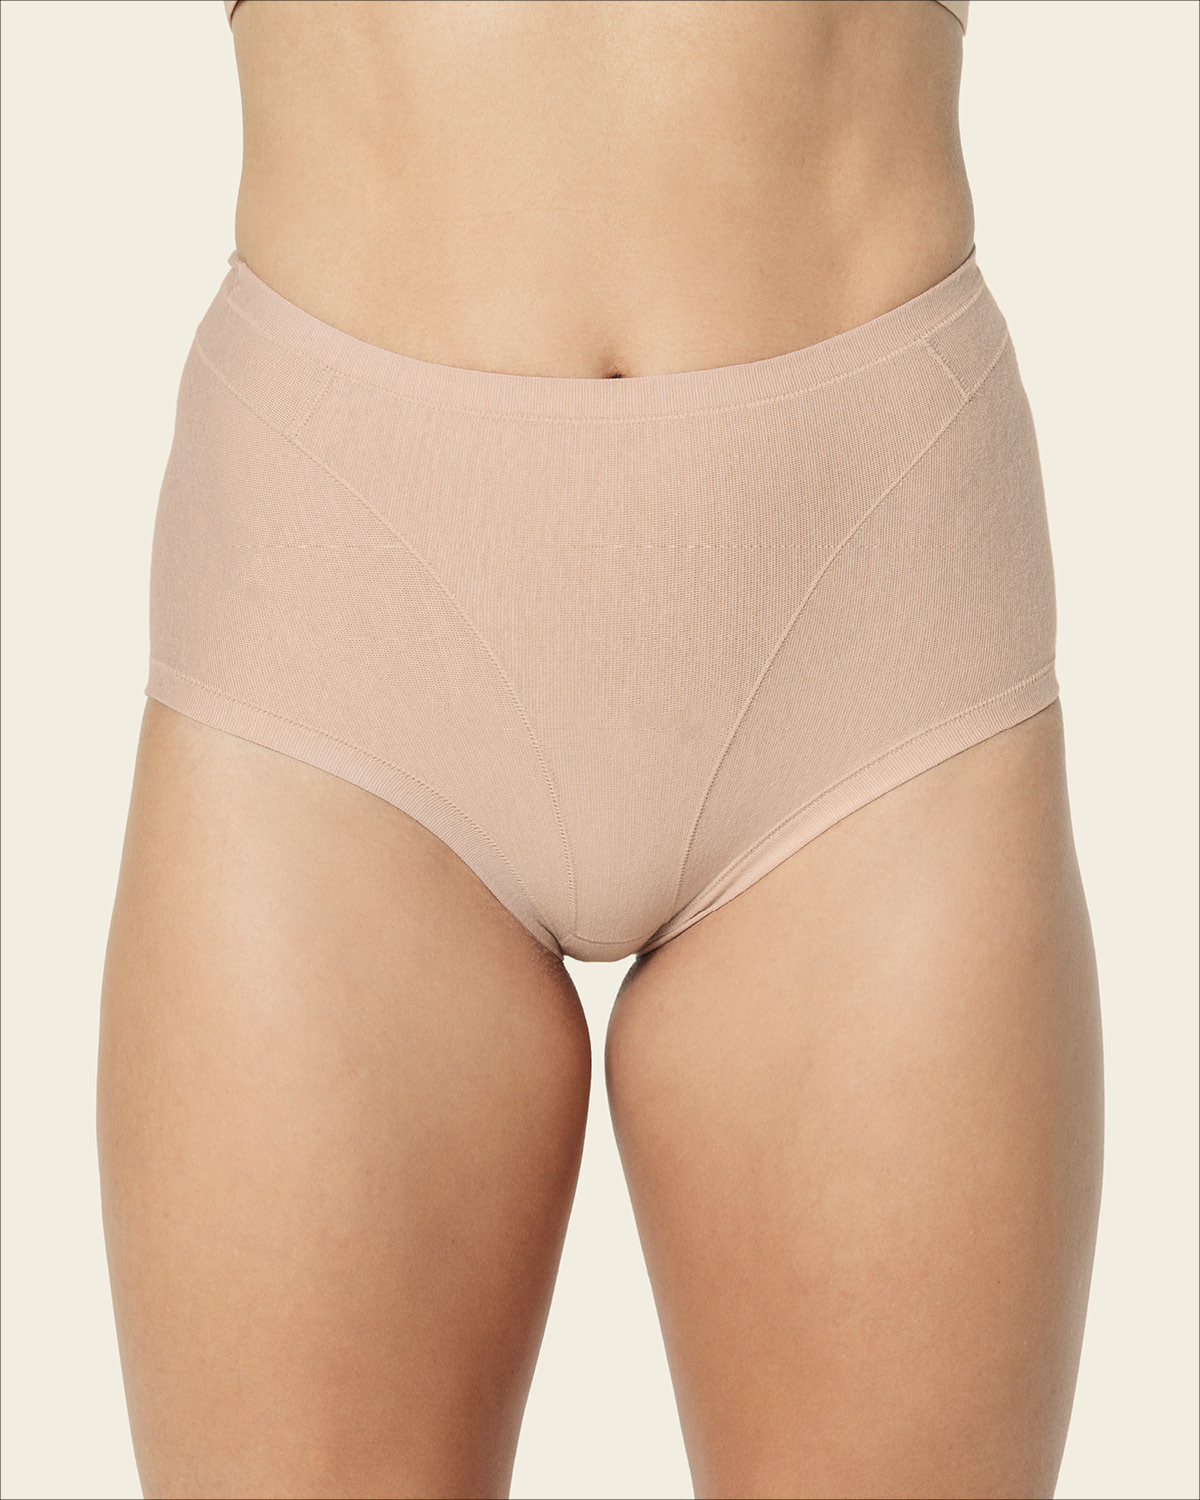 Panty Faja Para El Embarazo, Máximo Soporte Y Confort 012859 M Beige